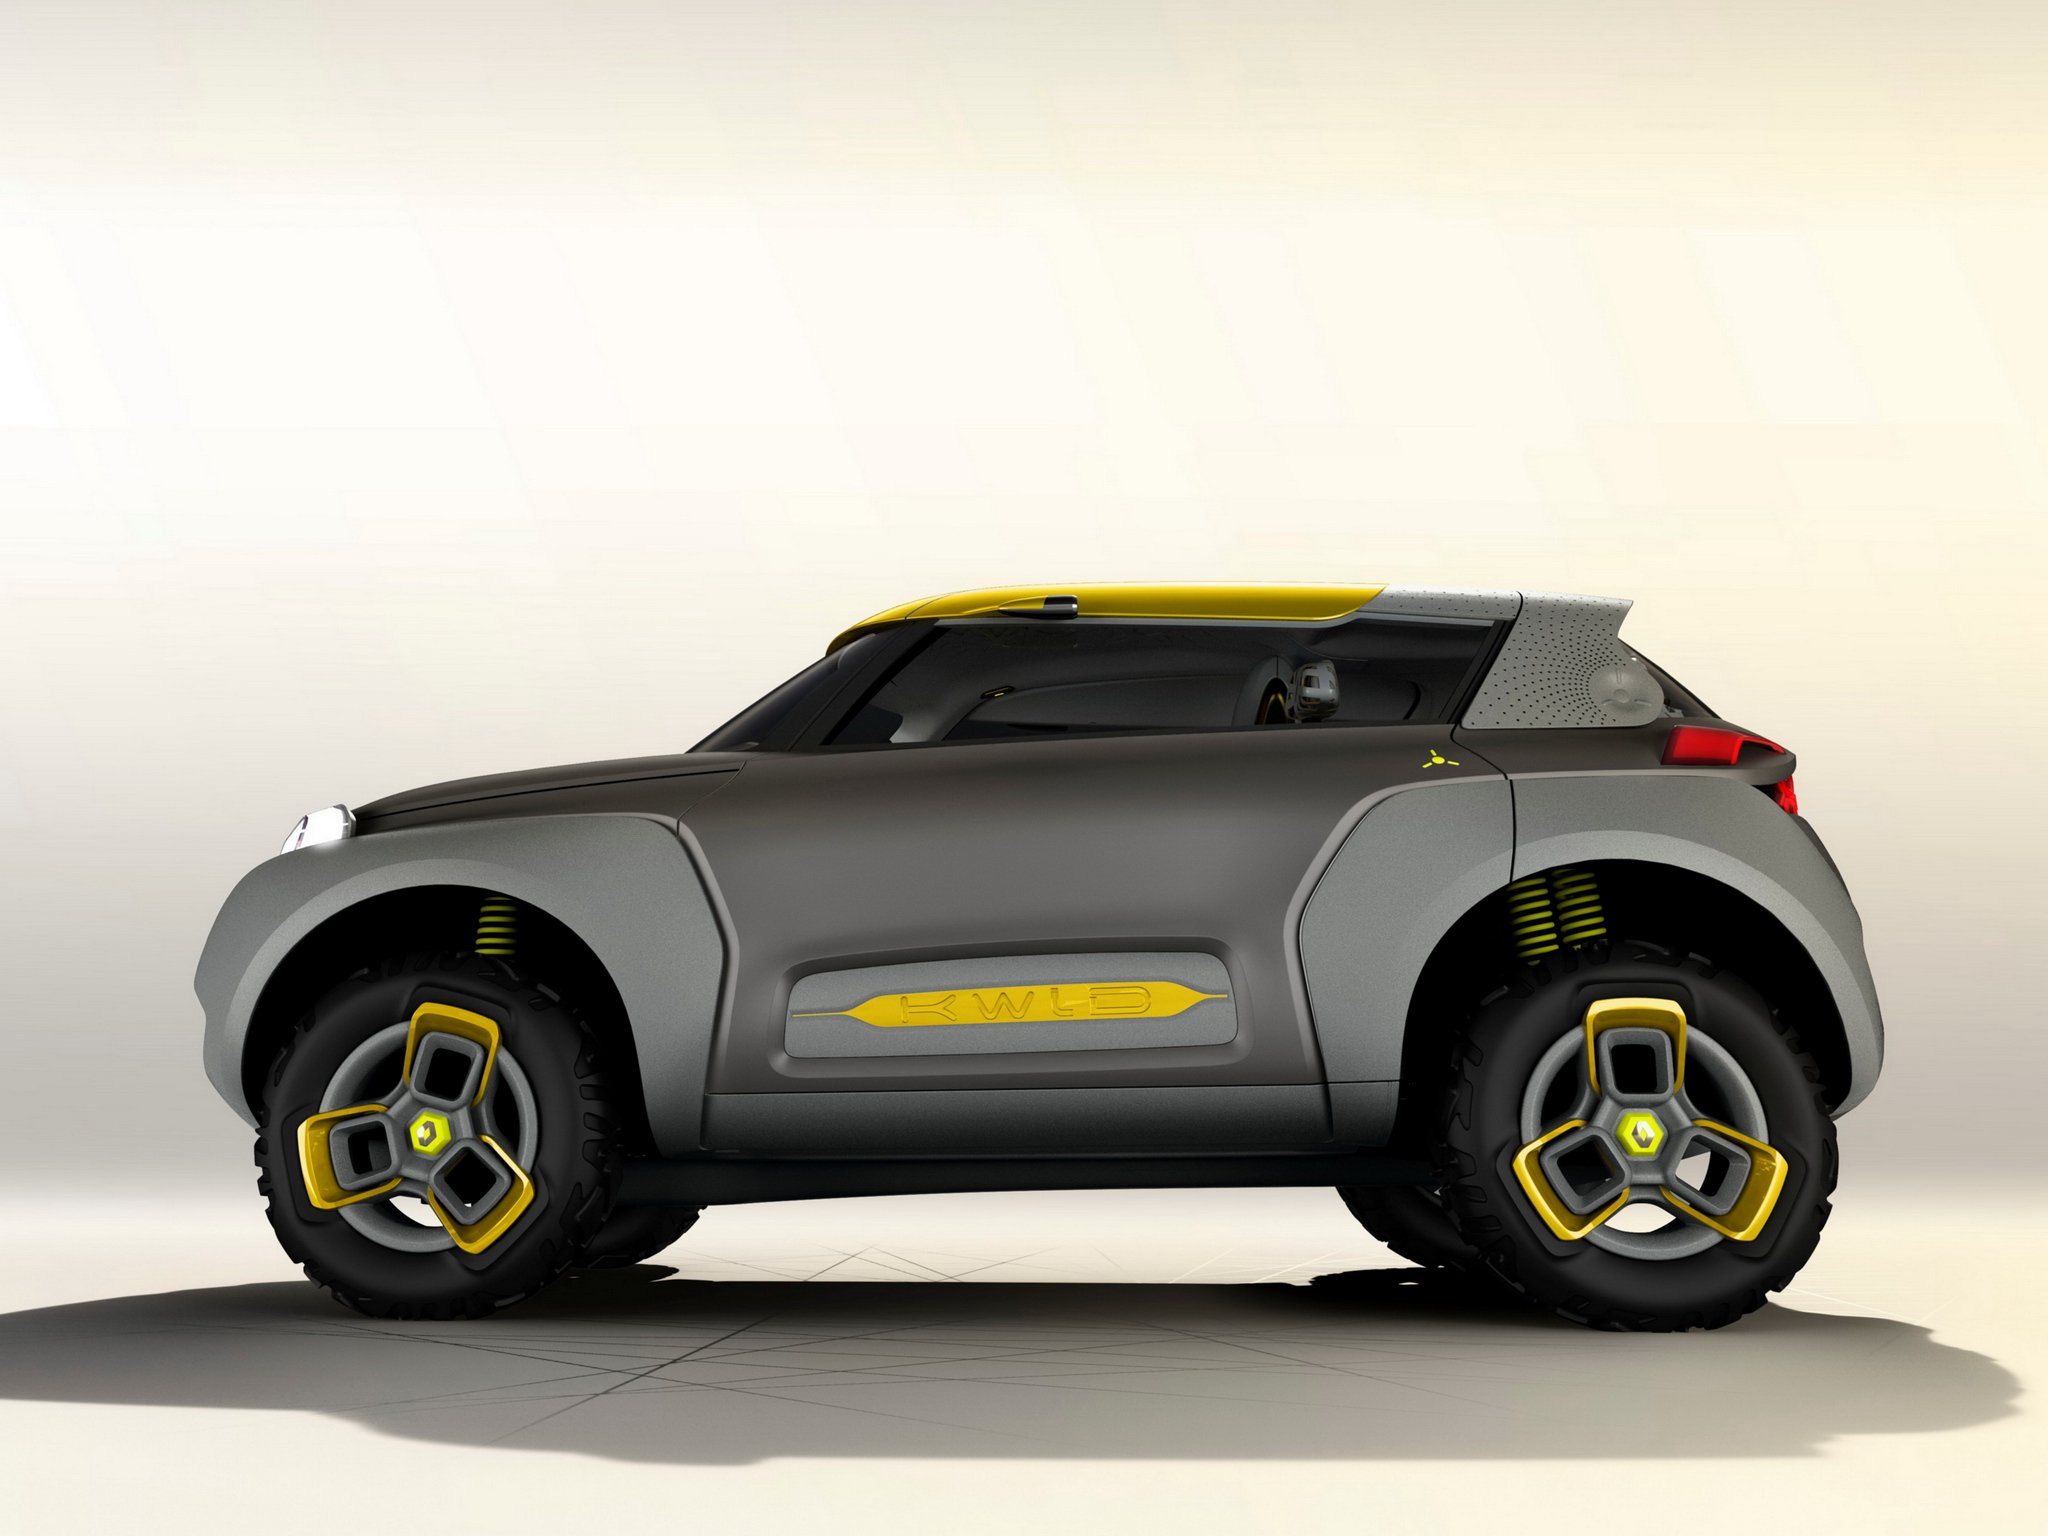 2014, Renault, Kwid, Concept Wallpaper